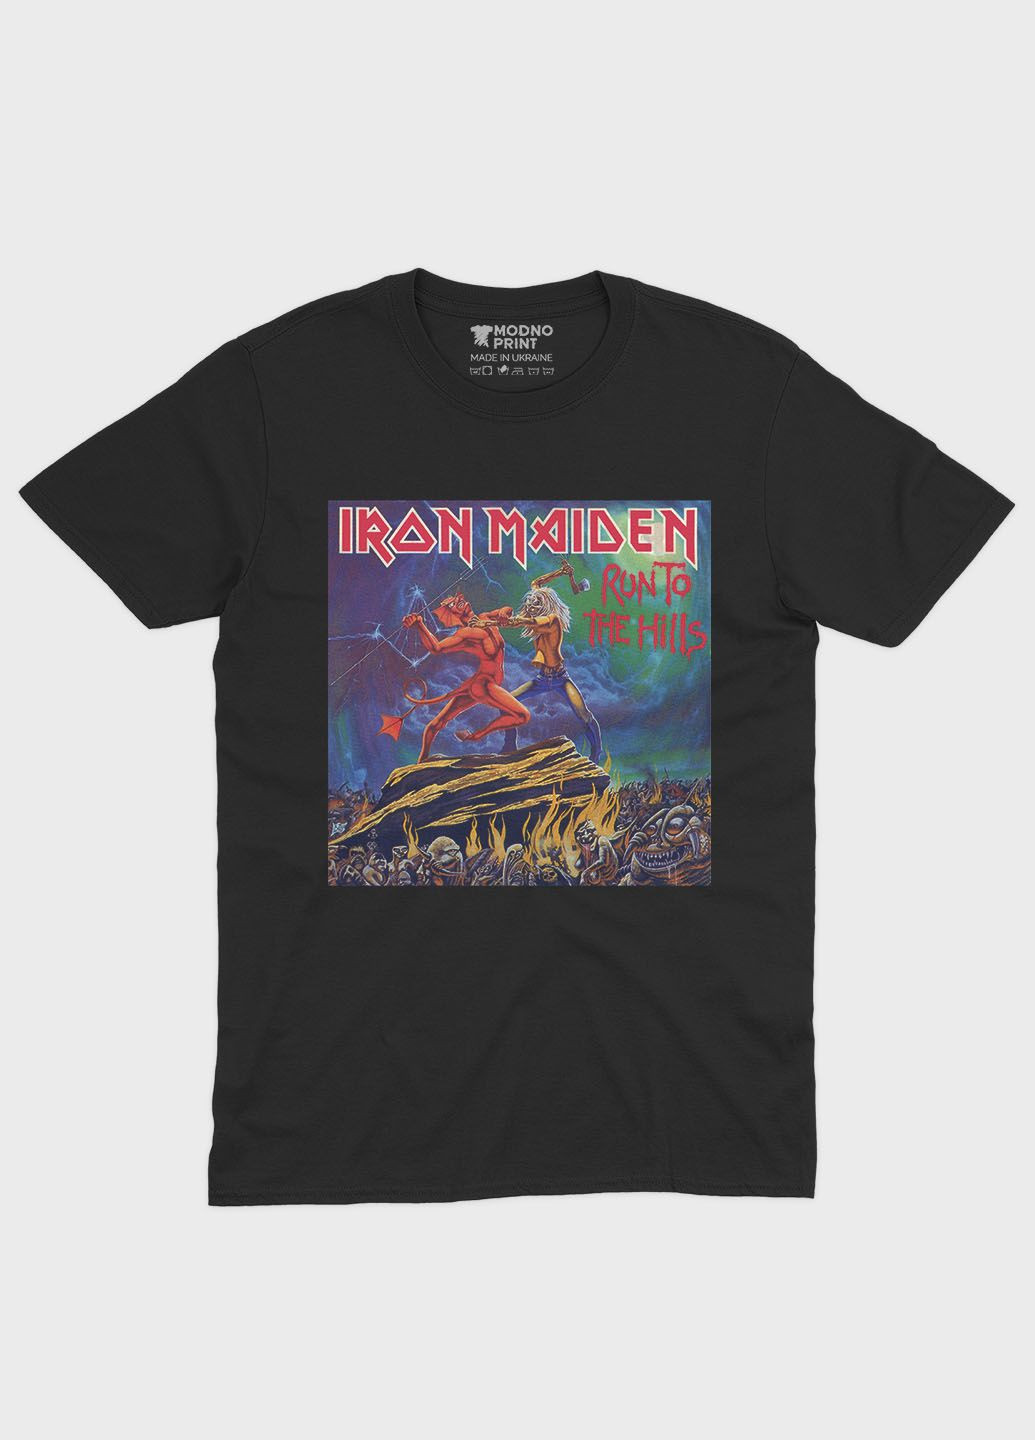 Черная мужская футболка с рок-принтом "iron maiden" (ts001-2-bl-004-2-138) Modno